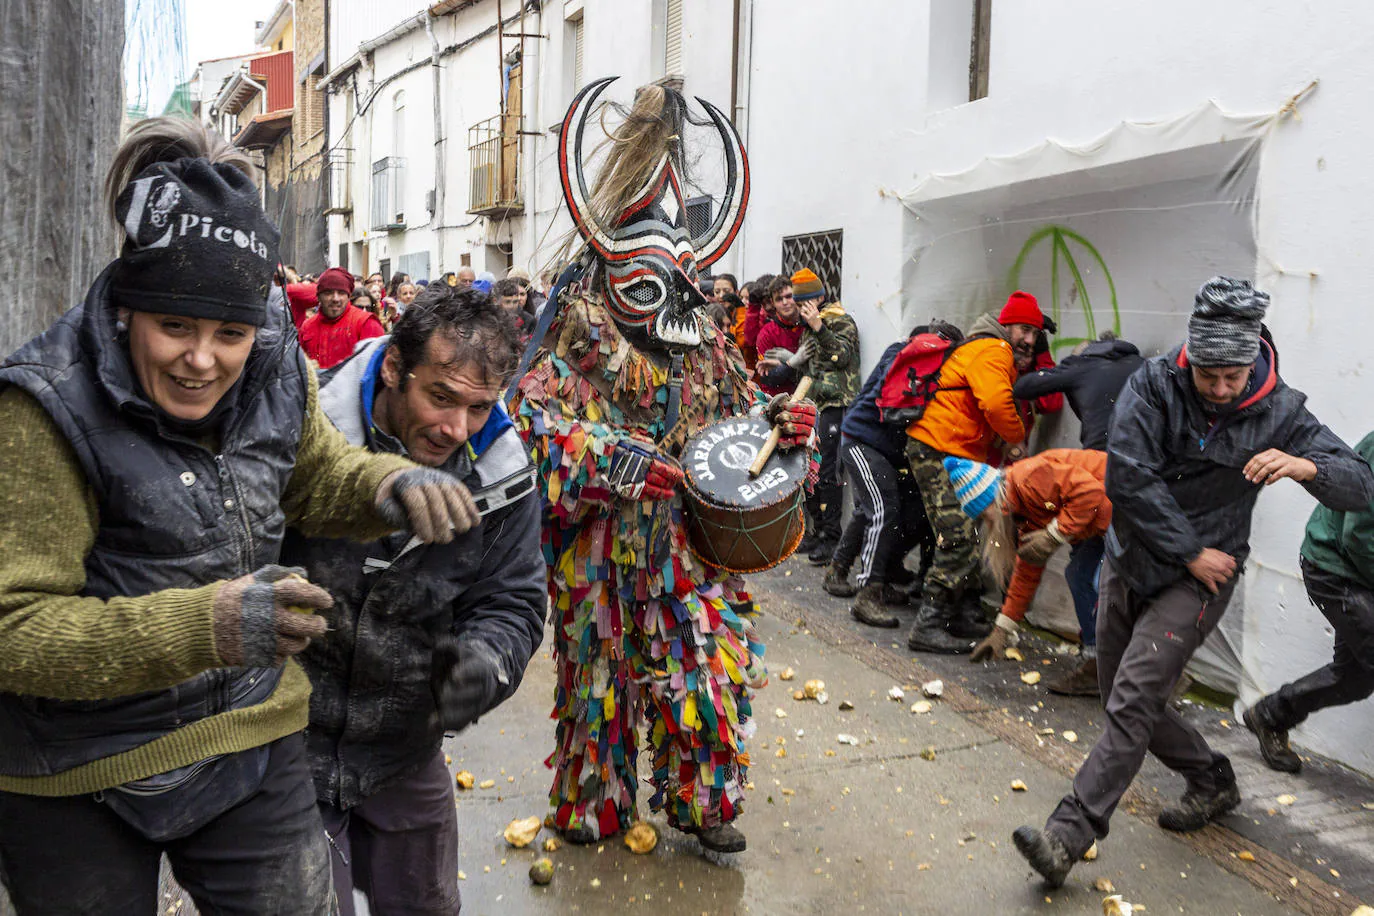 Fiestas de Extremadura: Jarramplas vuelve a recibir una lluvia de nabos en Piornal